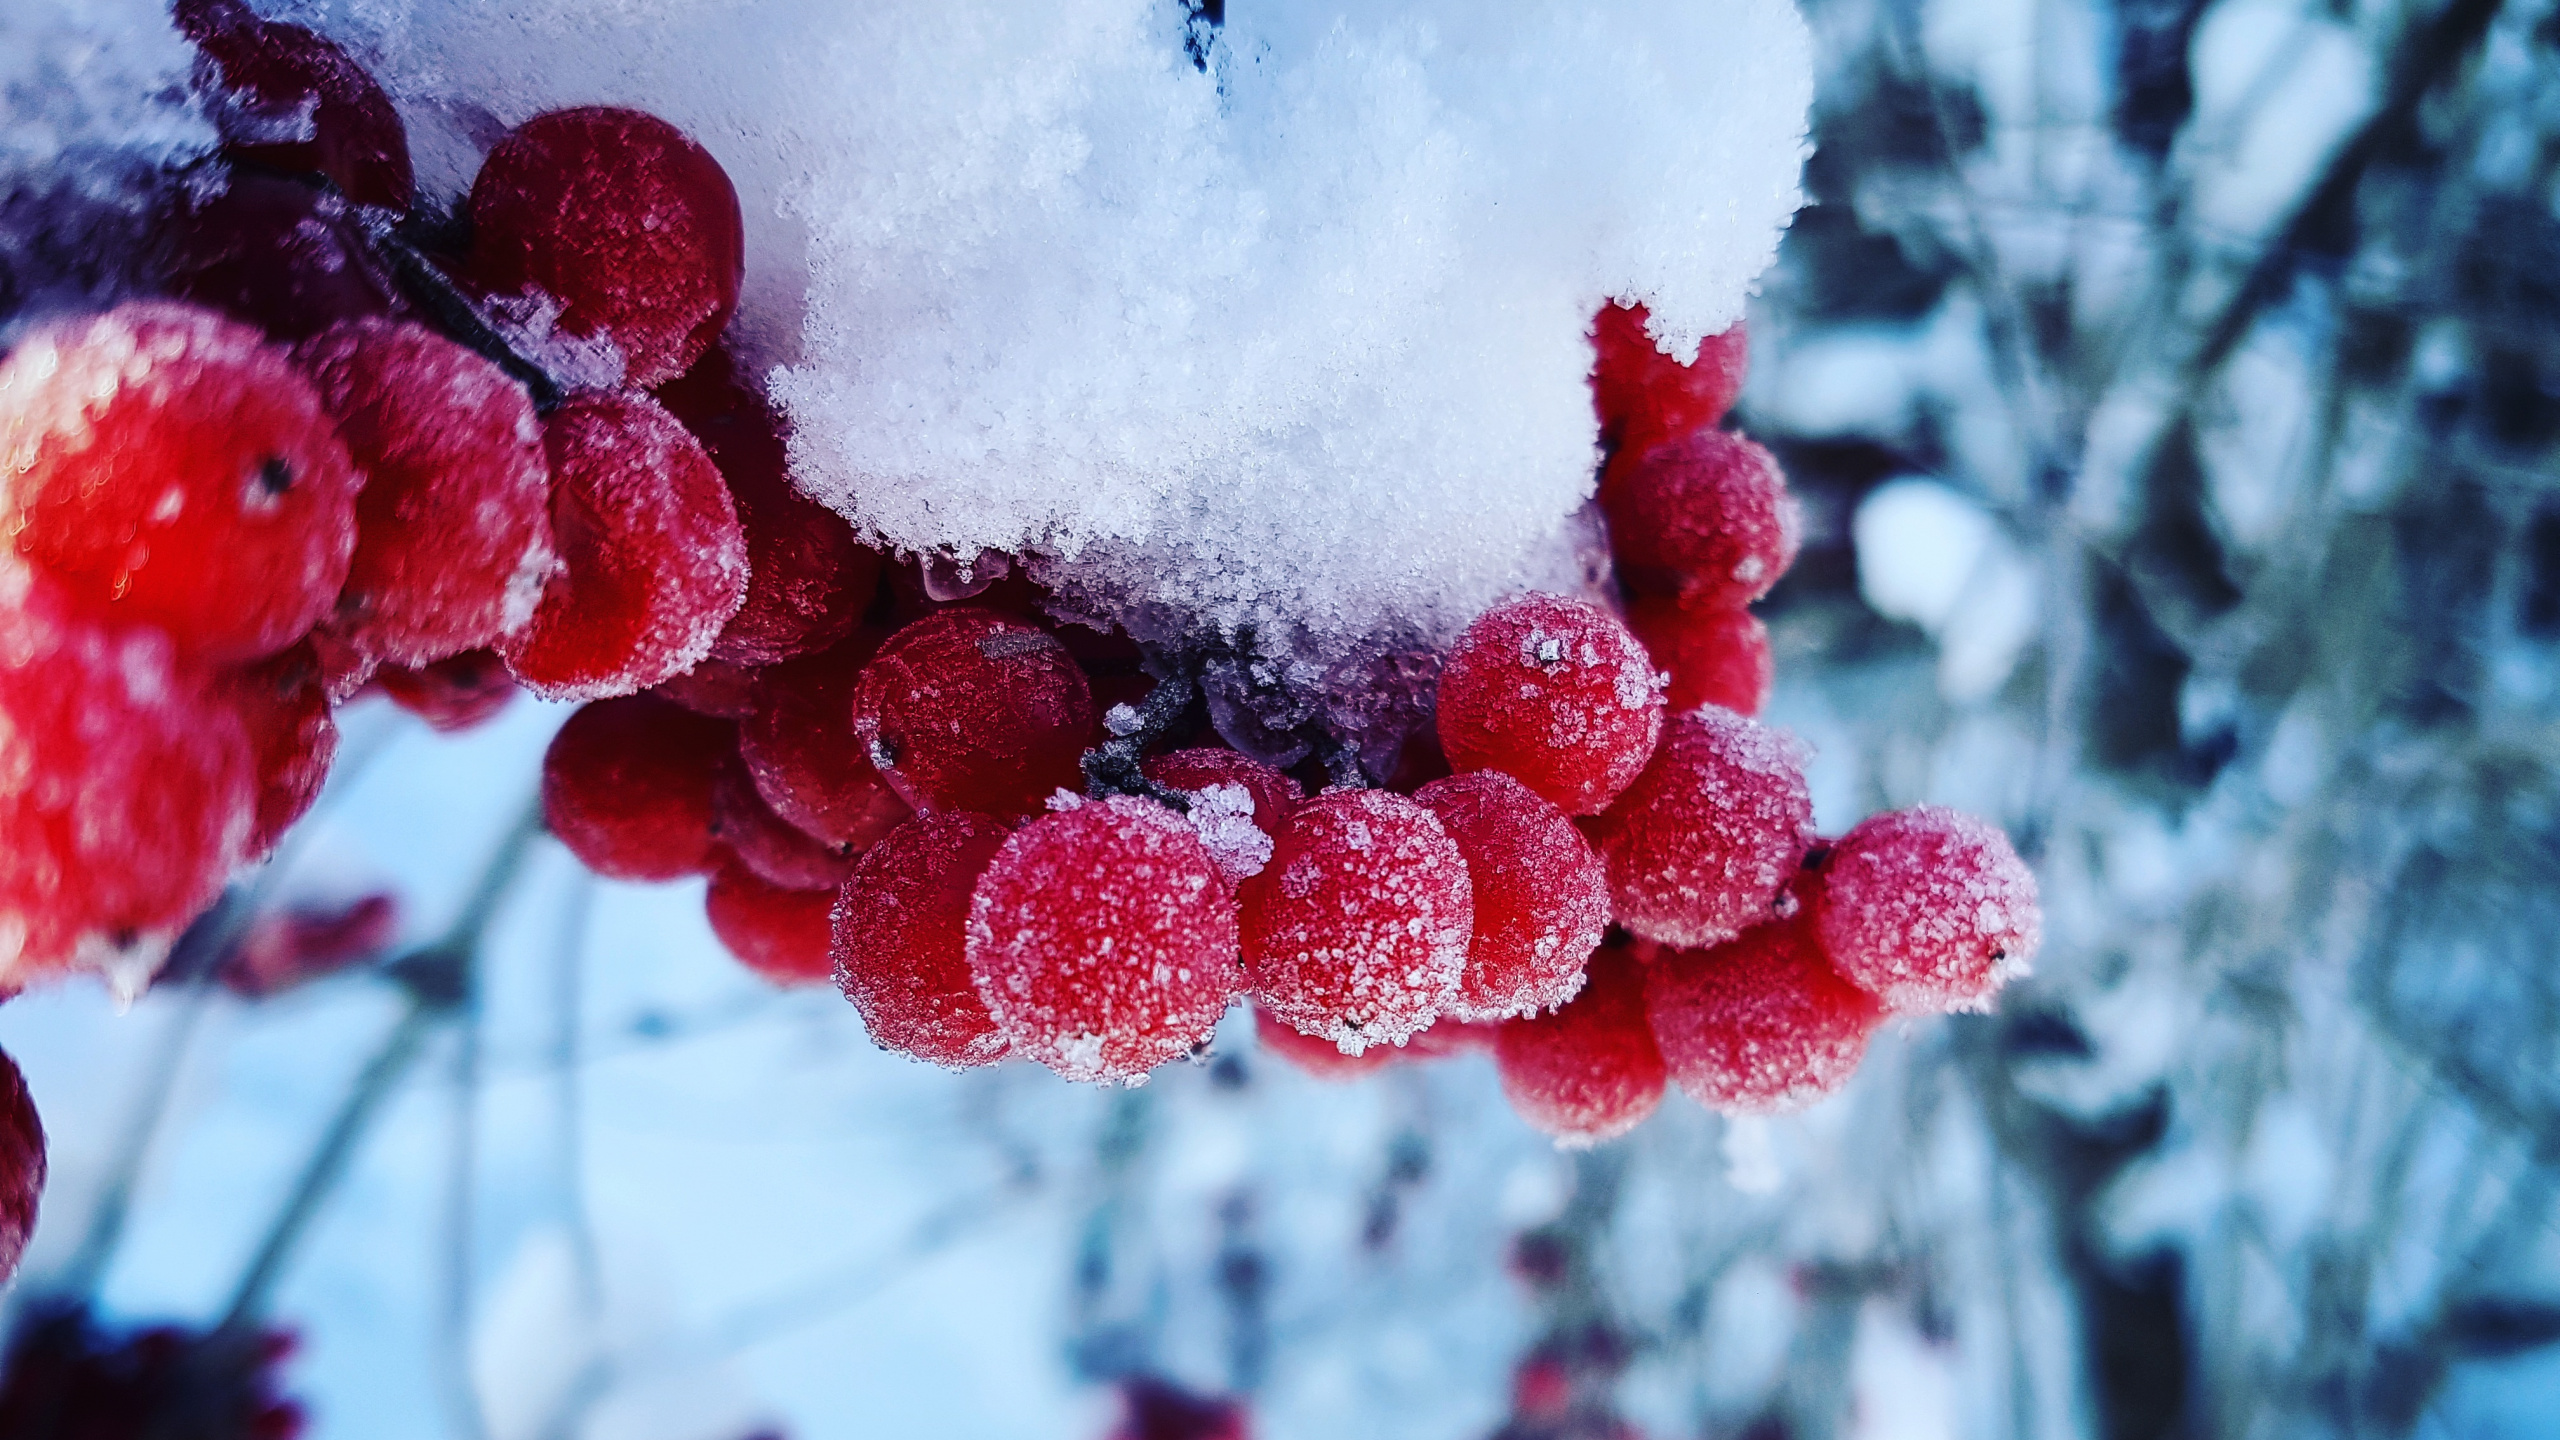 Rote Runde Früchte Mit Schnee Bedeckt. Wallpaper in 2560x1440 Resolution